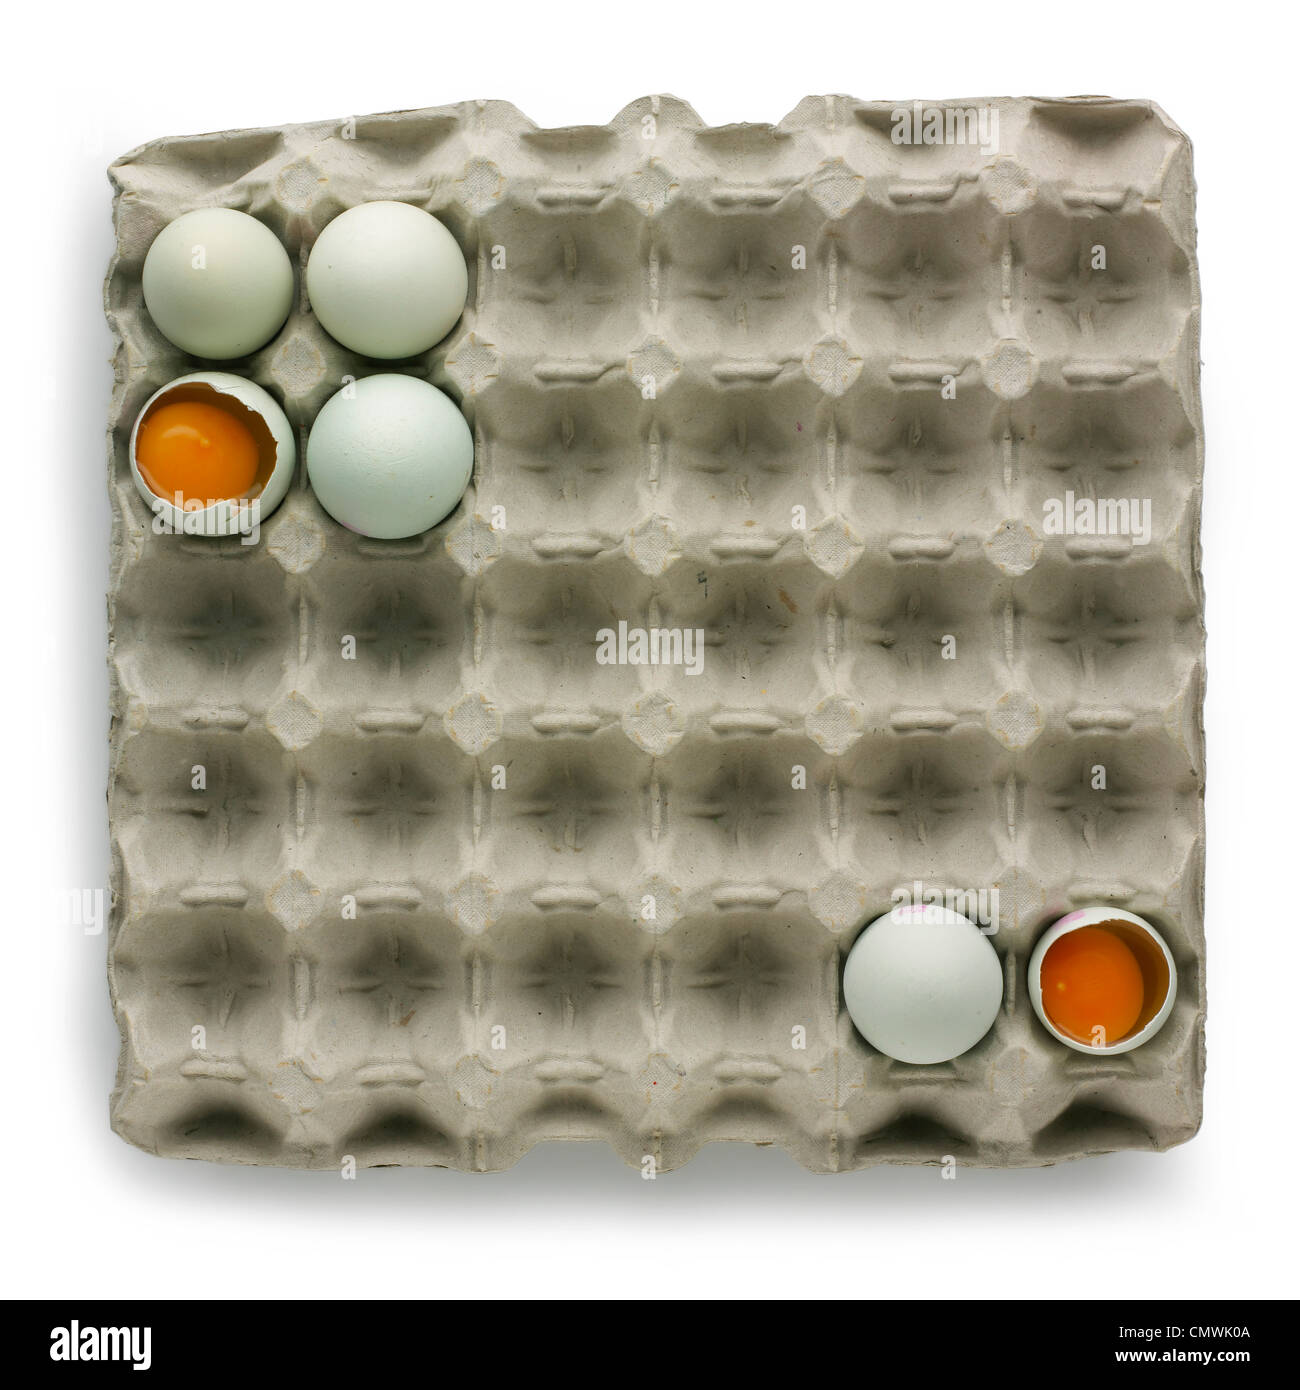 Luftbild der Eierbehälter aus Pappe Stockfoto